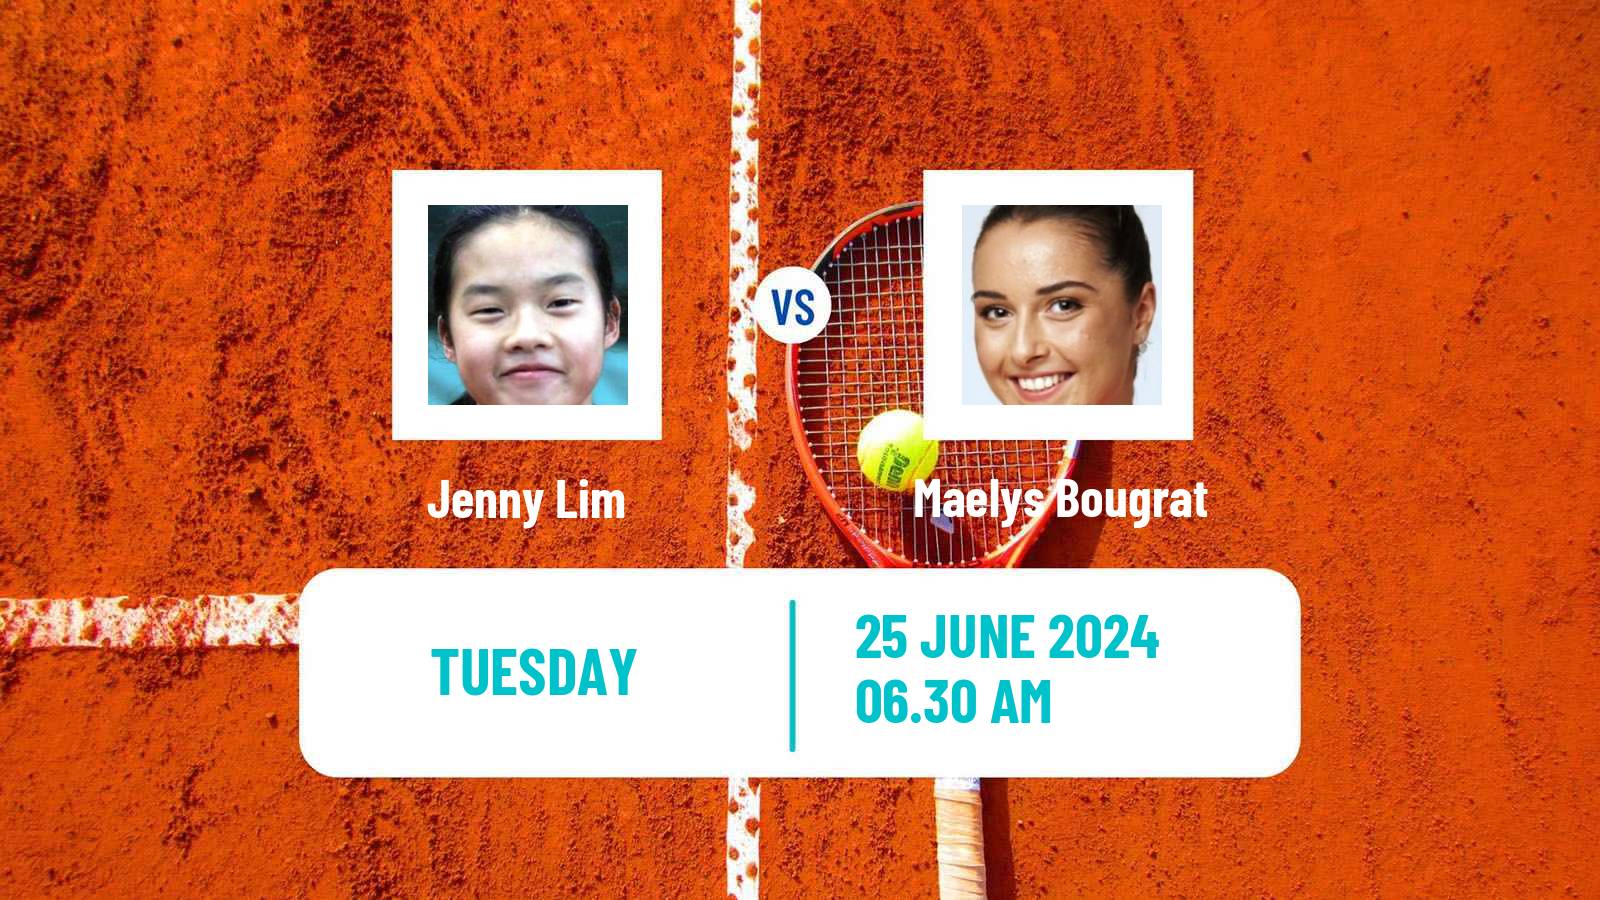 Tennis ITF W35 Perigueux Women Jenny Lim - Maelys Bougrat